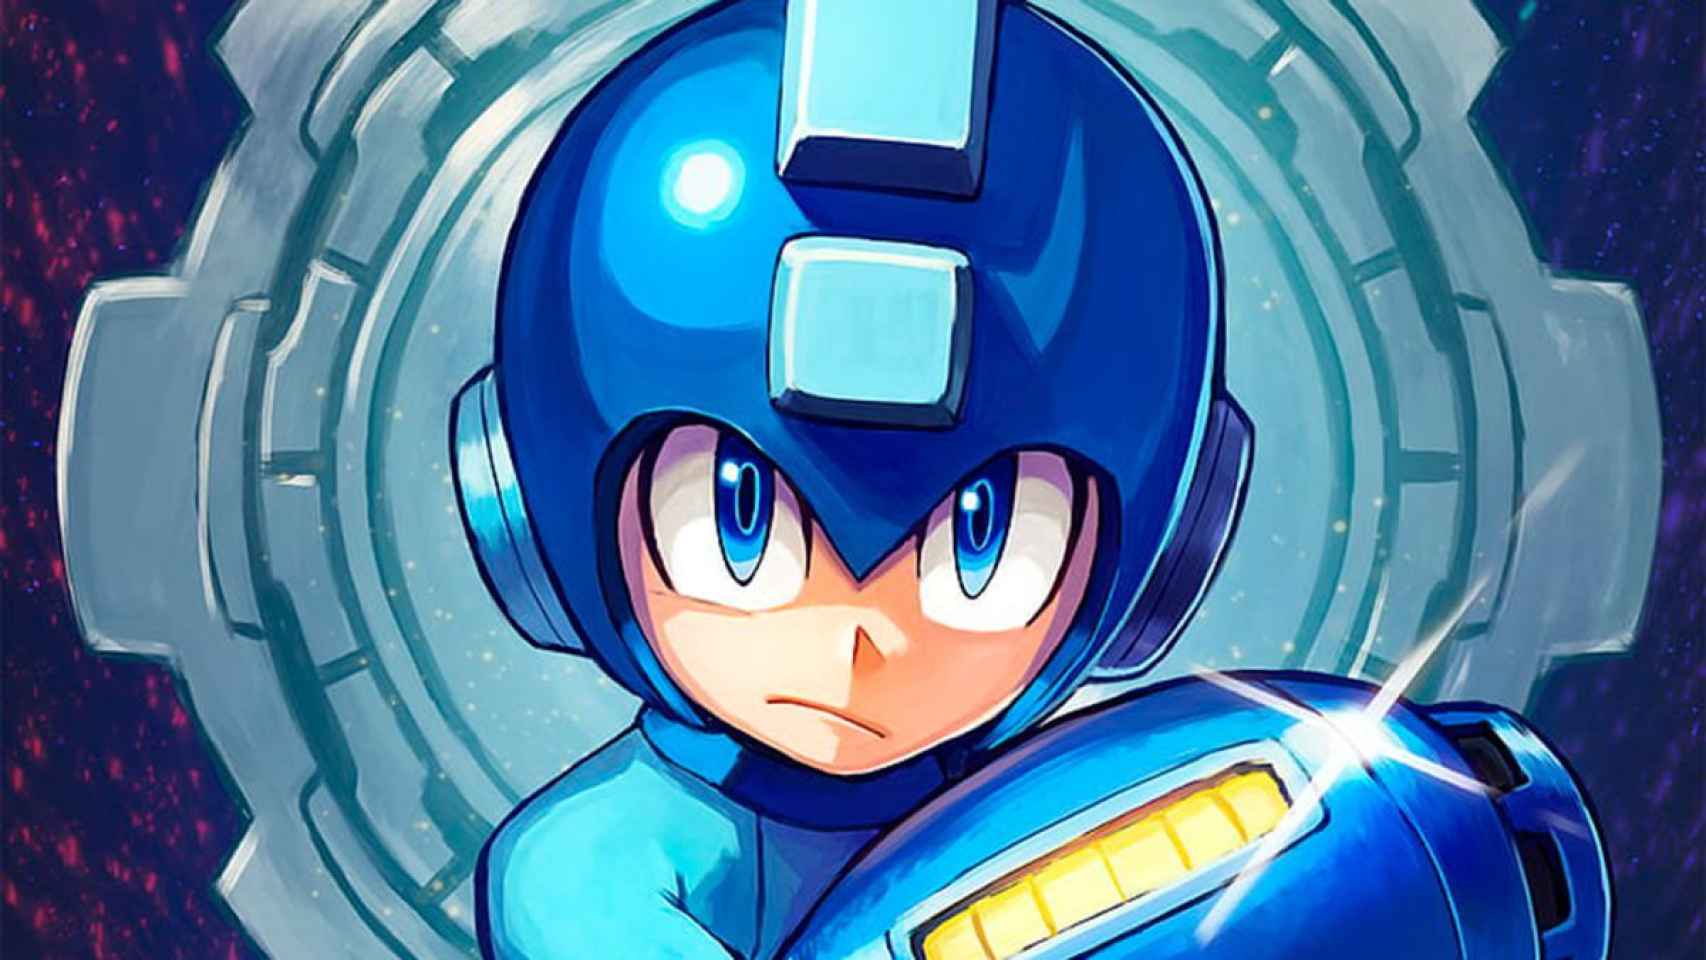 Mega Man tendrá su propia adaptación en forma de película.